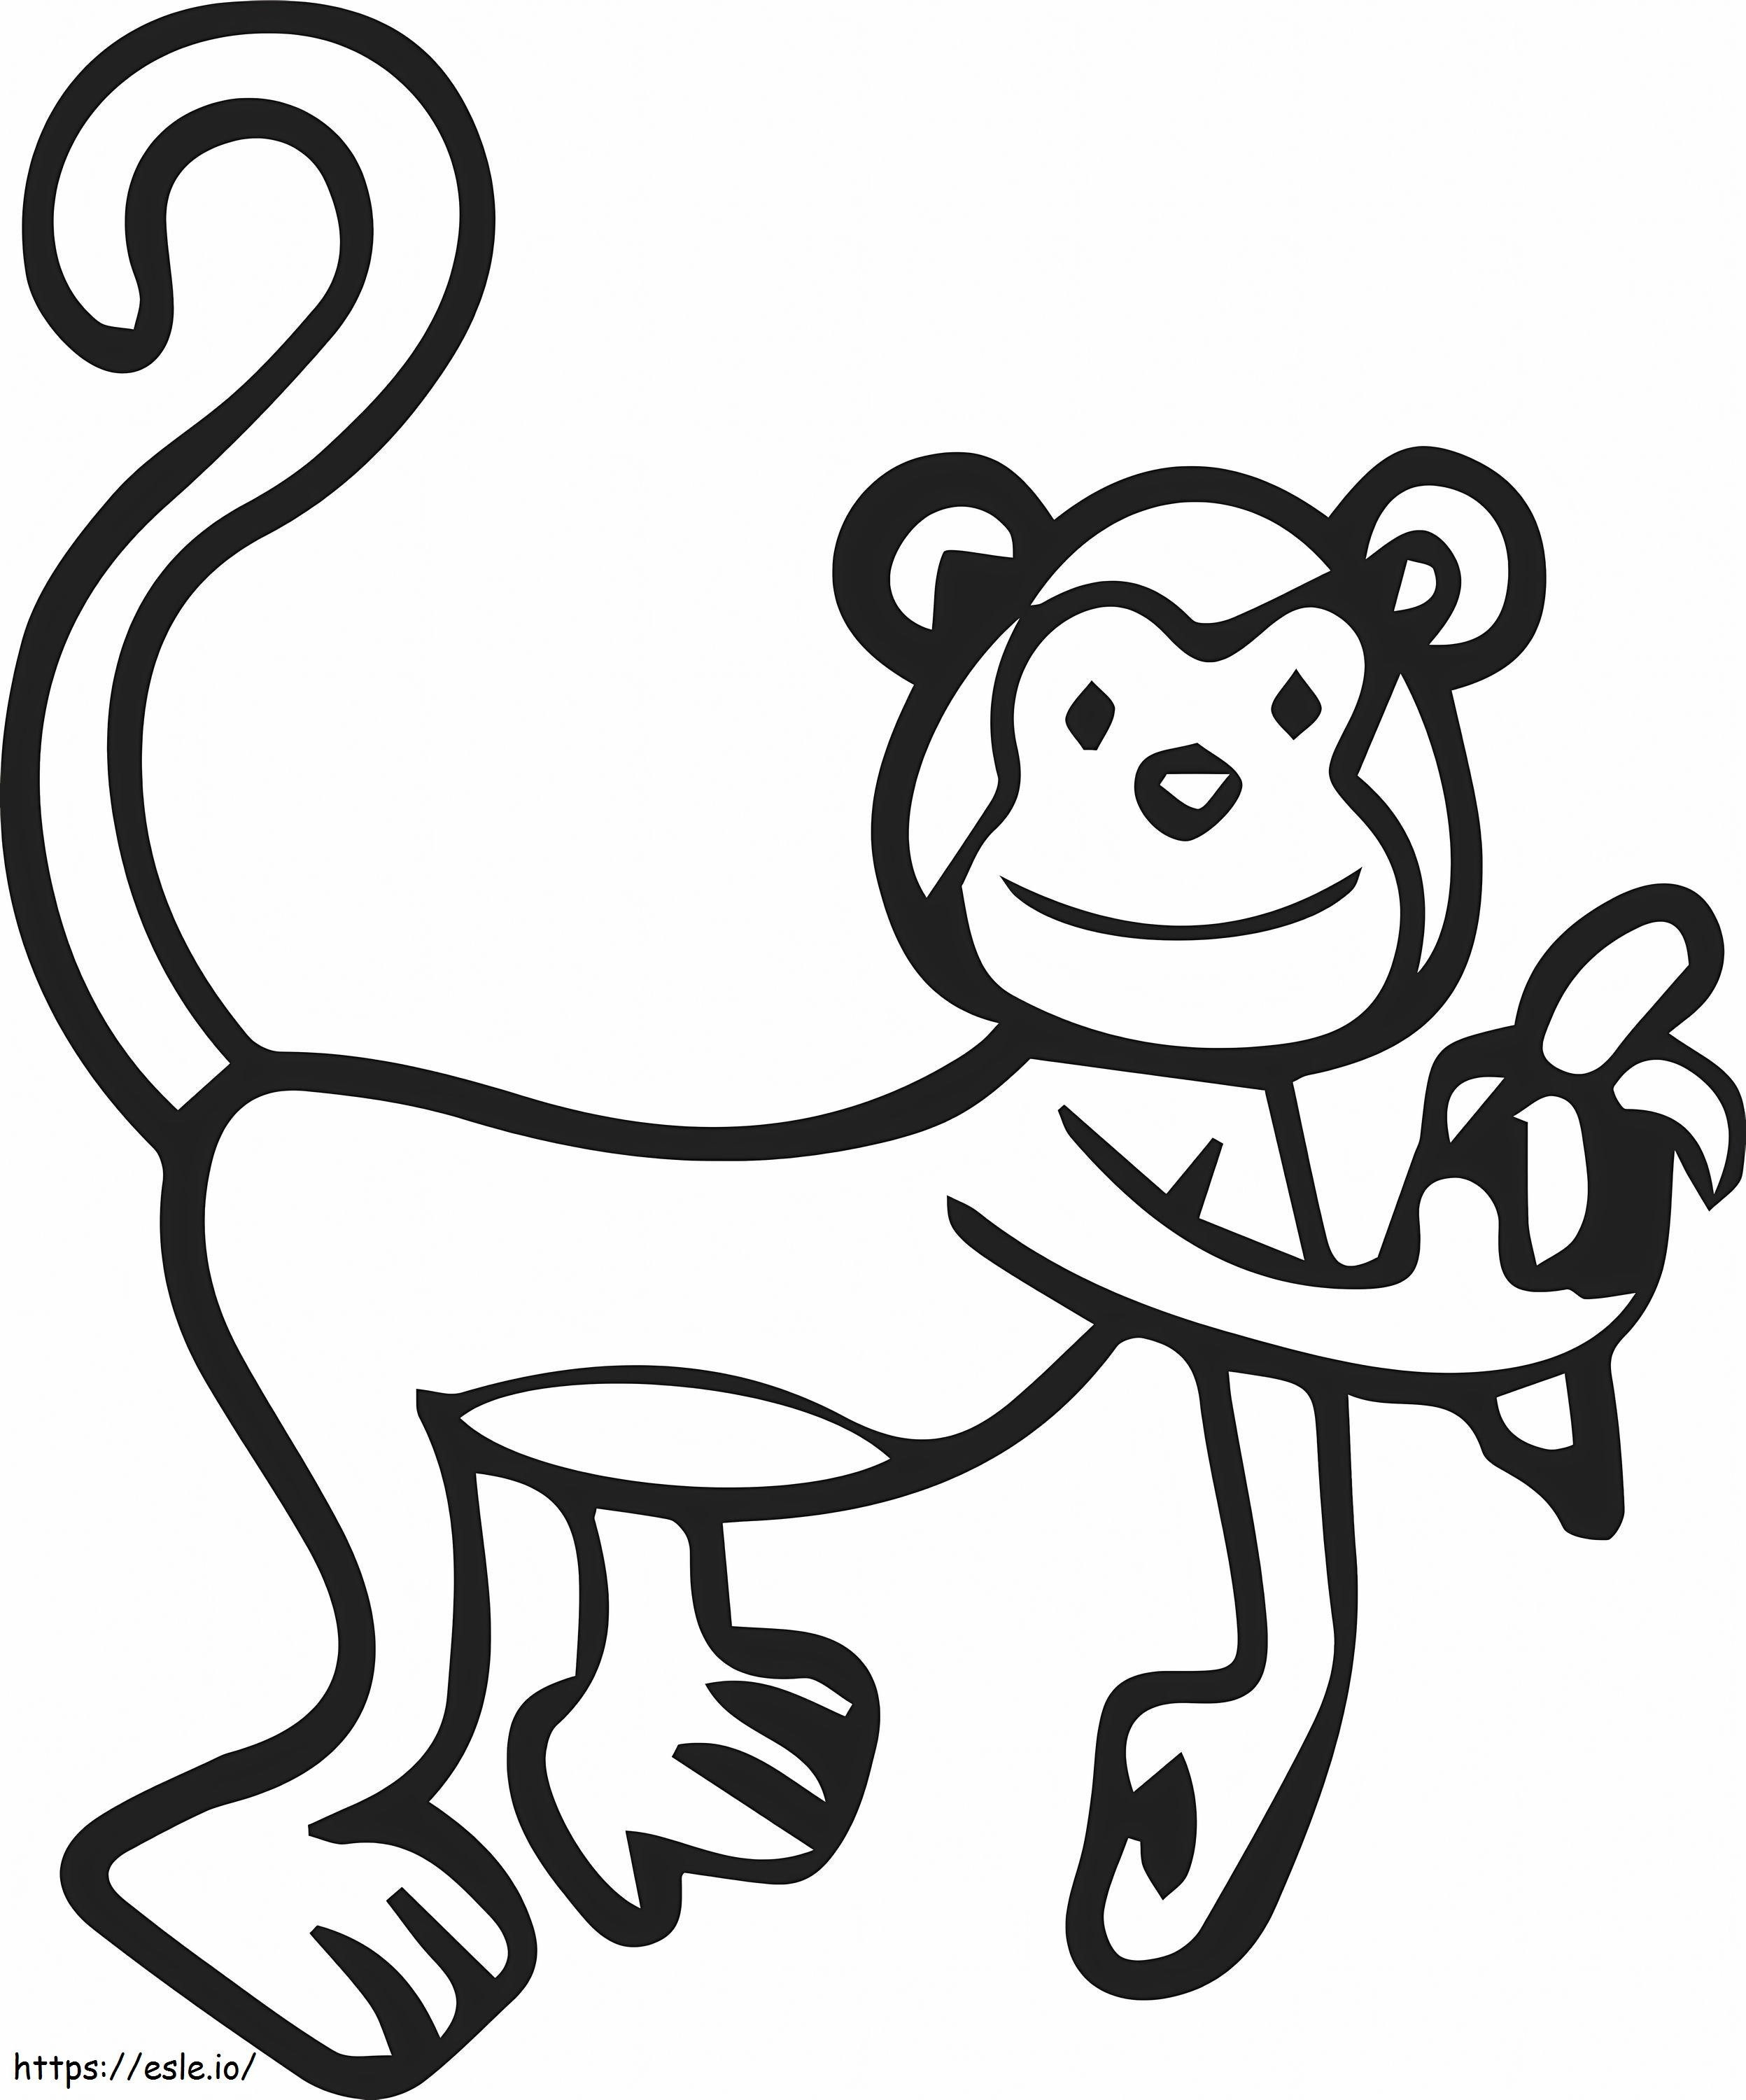 Mono de dibujo básico para colorear